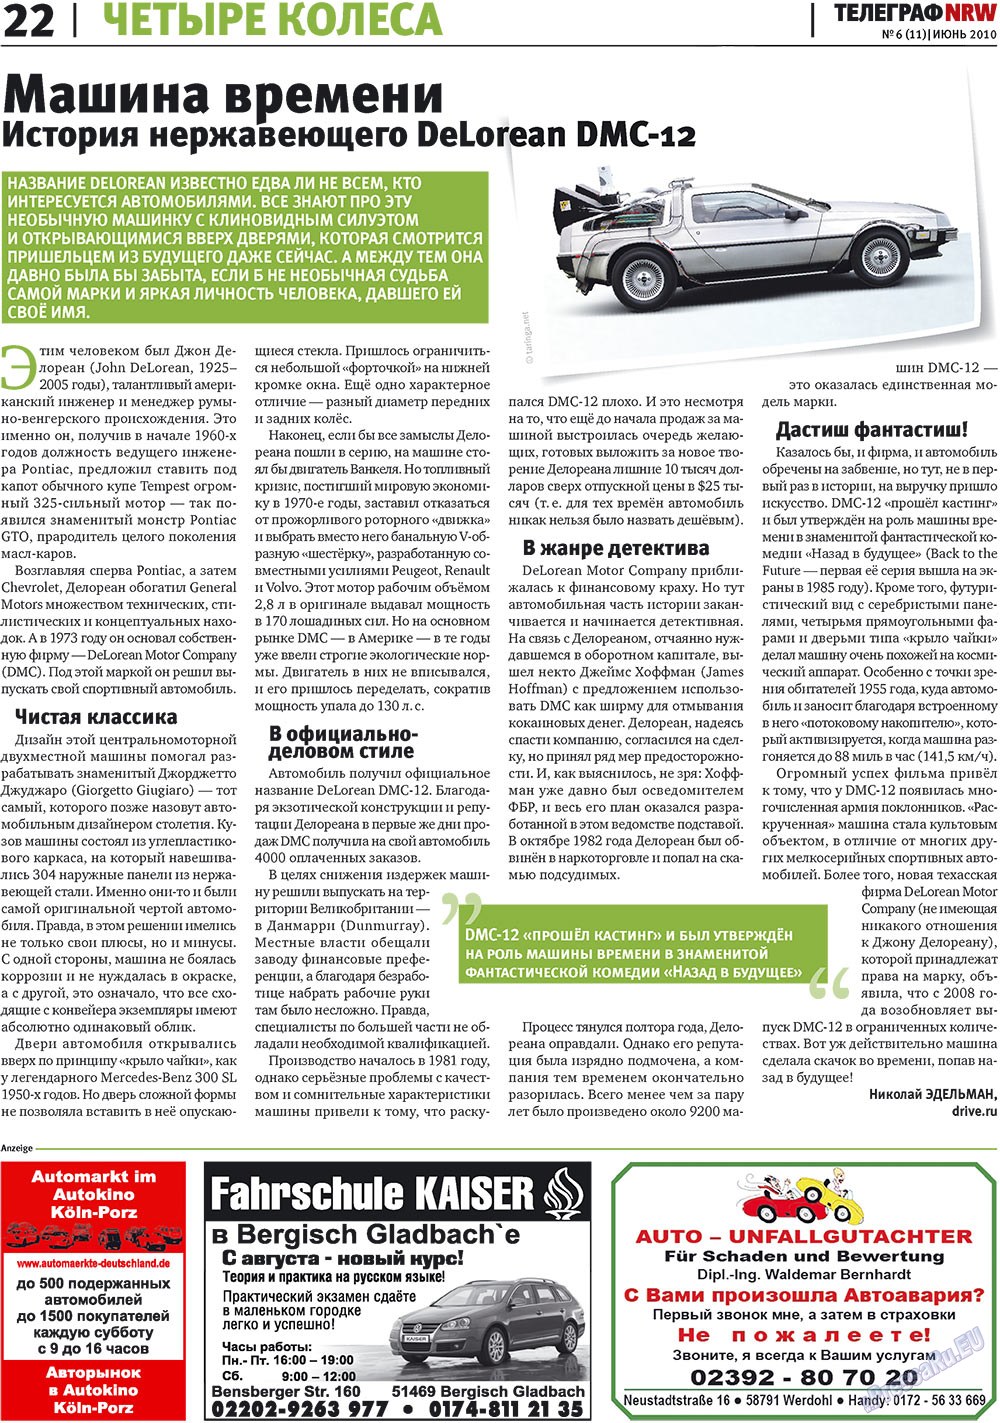 Telegraf NRW (Zeitung). 2010 Jahr, Ausgabe 6, Seite 22